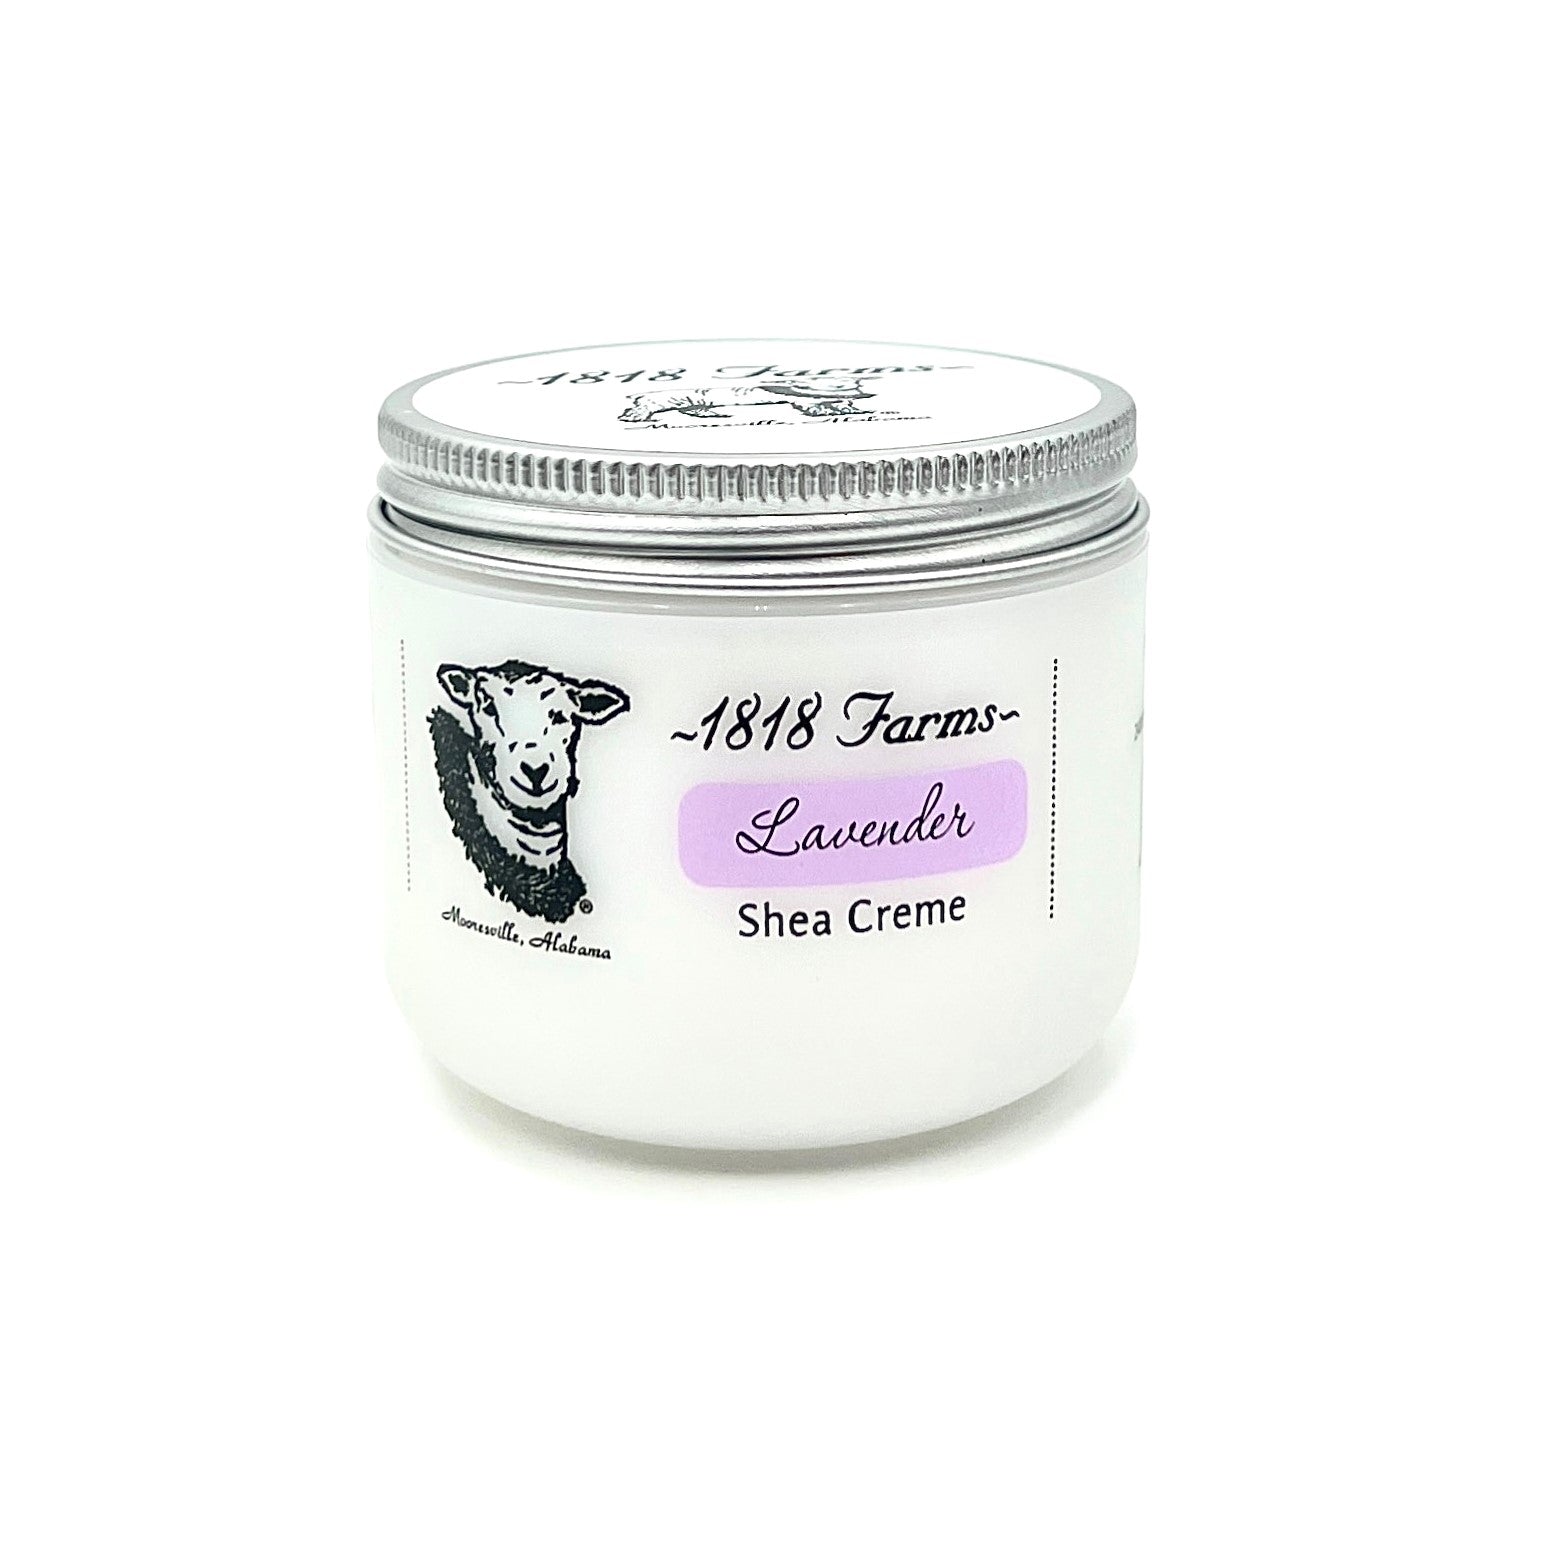 Shea Creme (4 fl oz) | Lavender Shea Creme 1818 Farms   